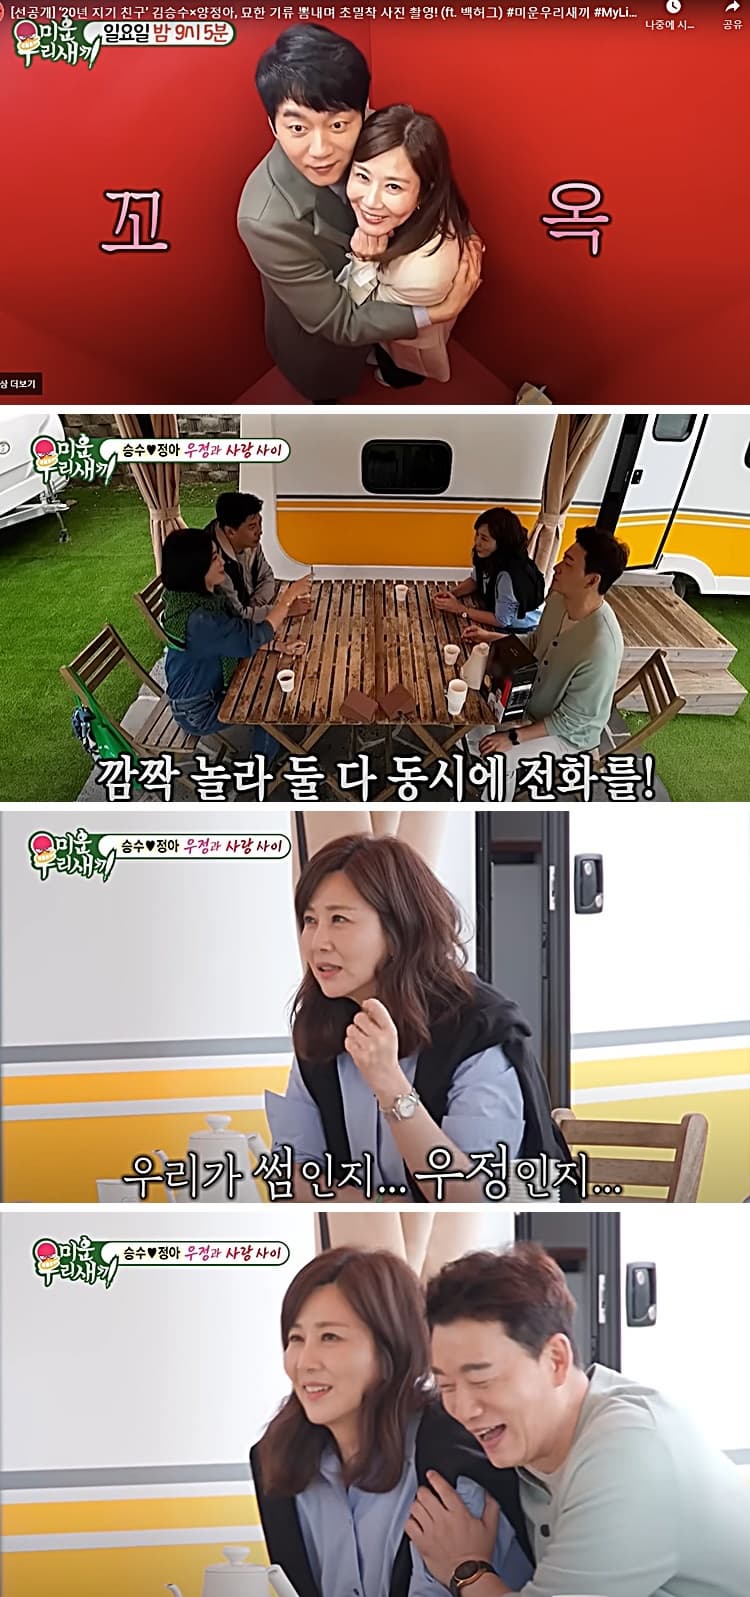 김승수와 양정아의 홍대 데이트와 캠핑장면